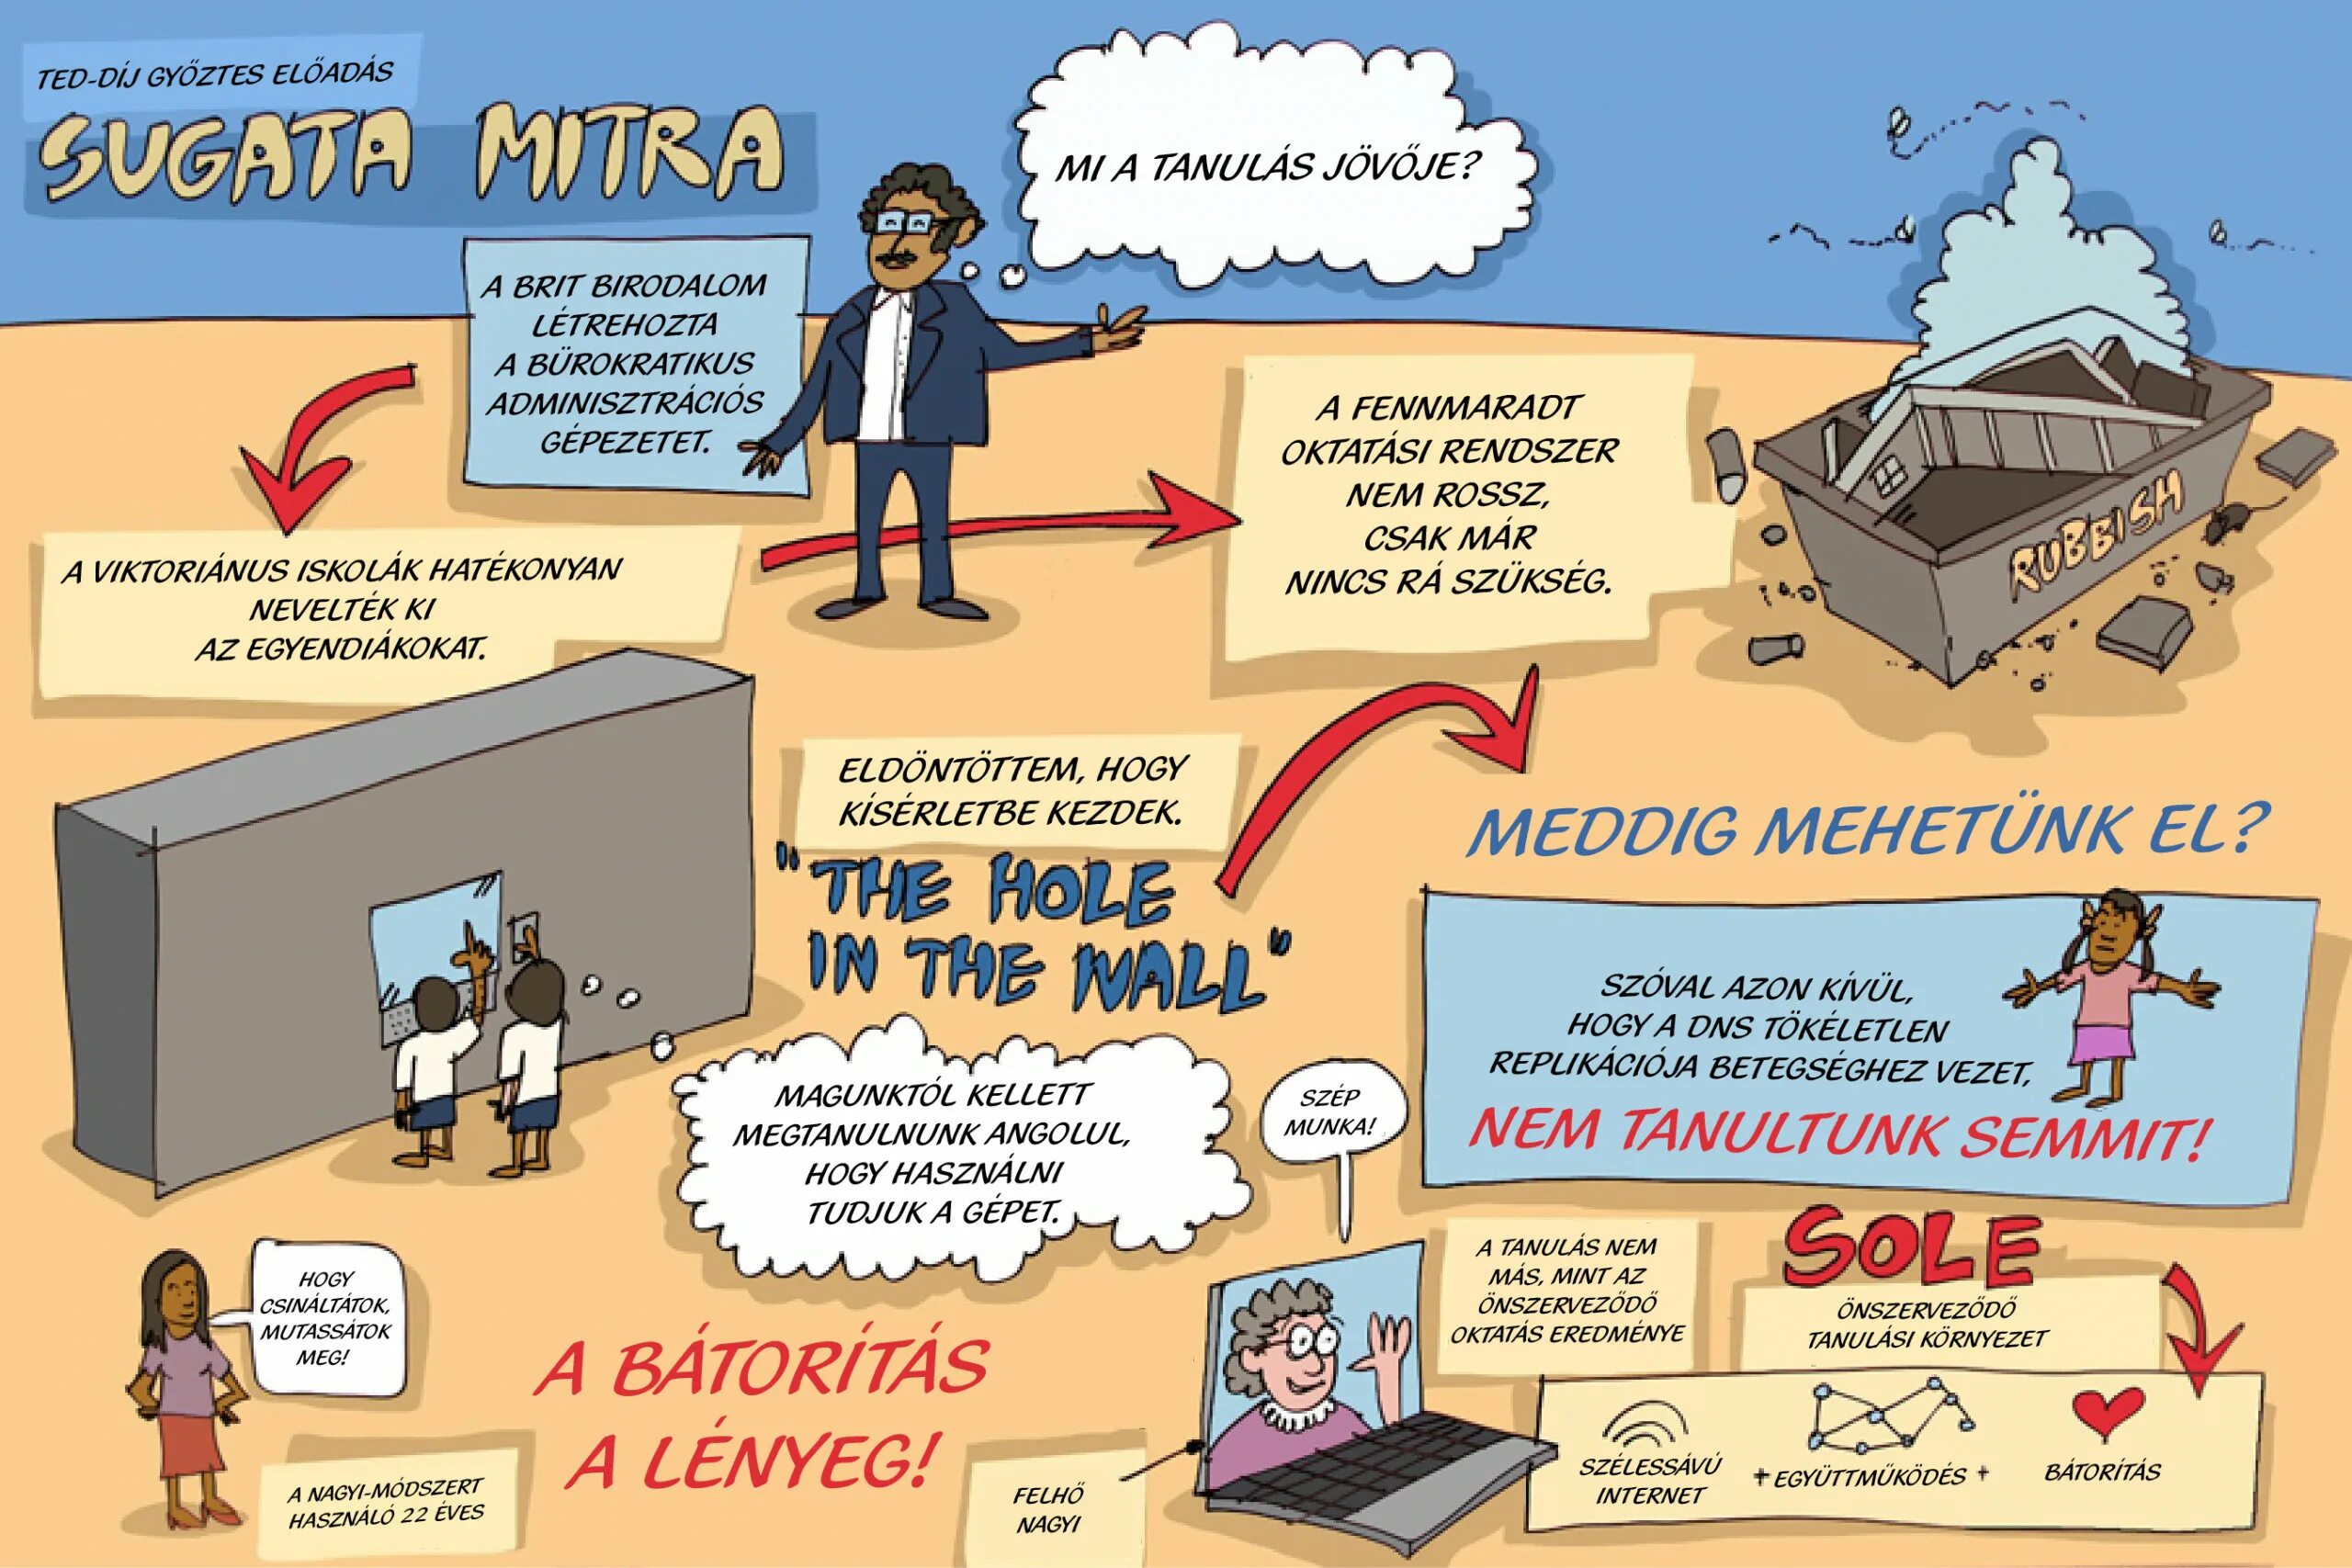 Sugata Mitra. Sugata Mitra the child-Driven Education основные идеи. How will Education be in the Future?. Sole by Sugata Mitra.